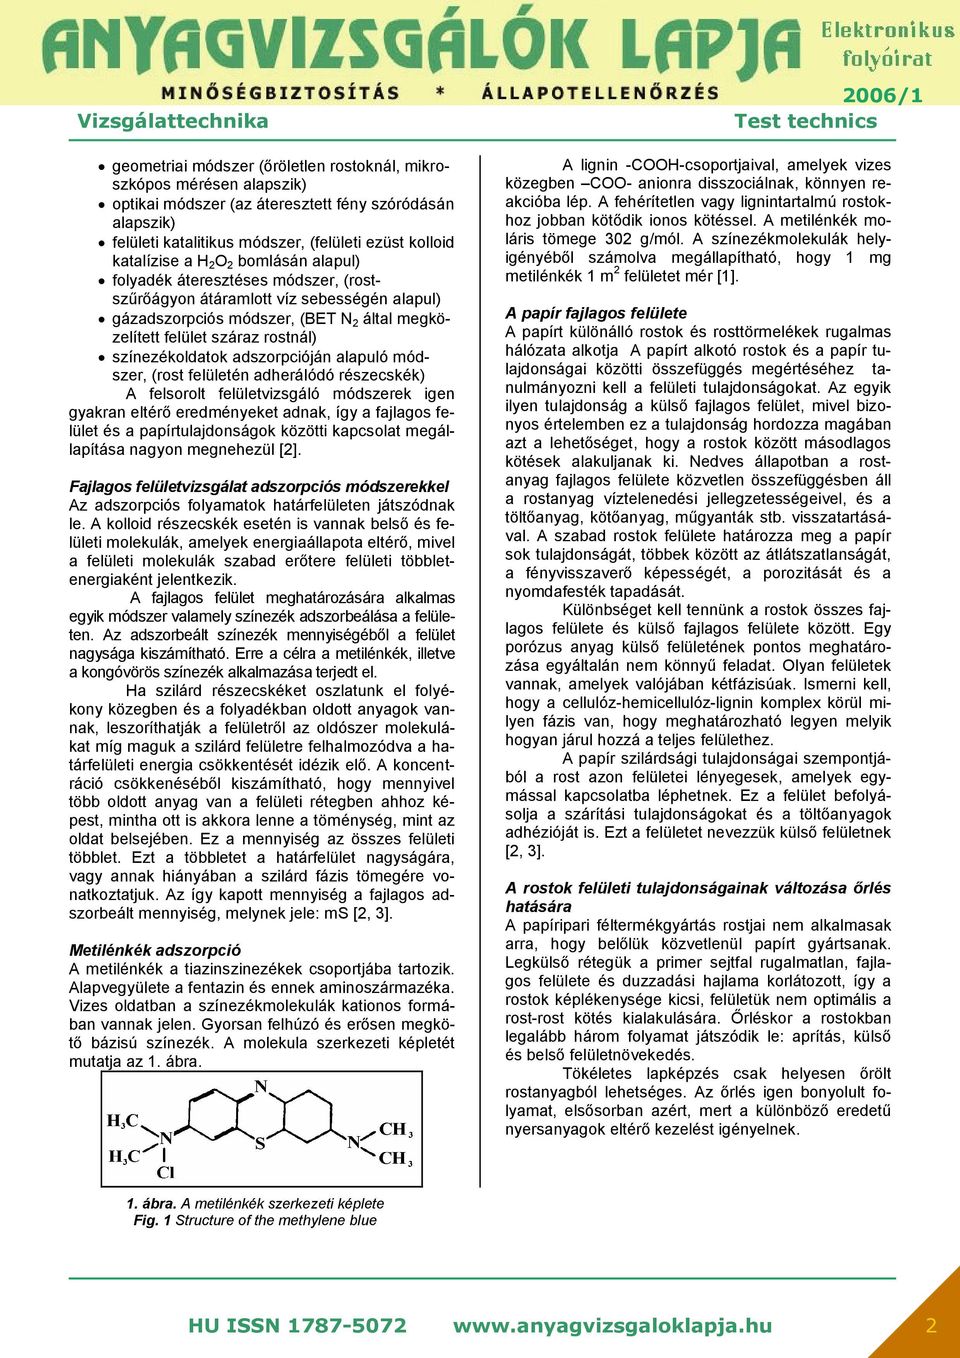 Papíripari rostanyagok kolloidkémiai szerkezetének vizsgálata víz közegben  színezékrészecskék adszorpciójával* - PDF Ingyenes letöltés